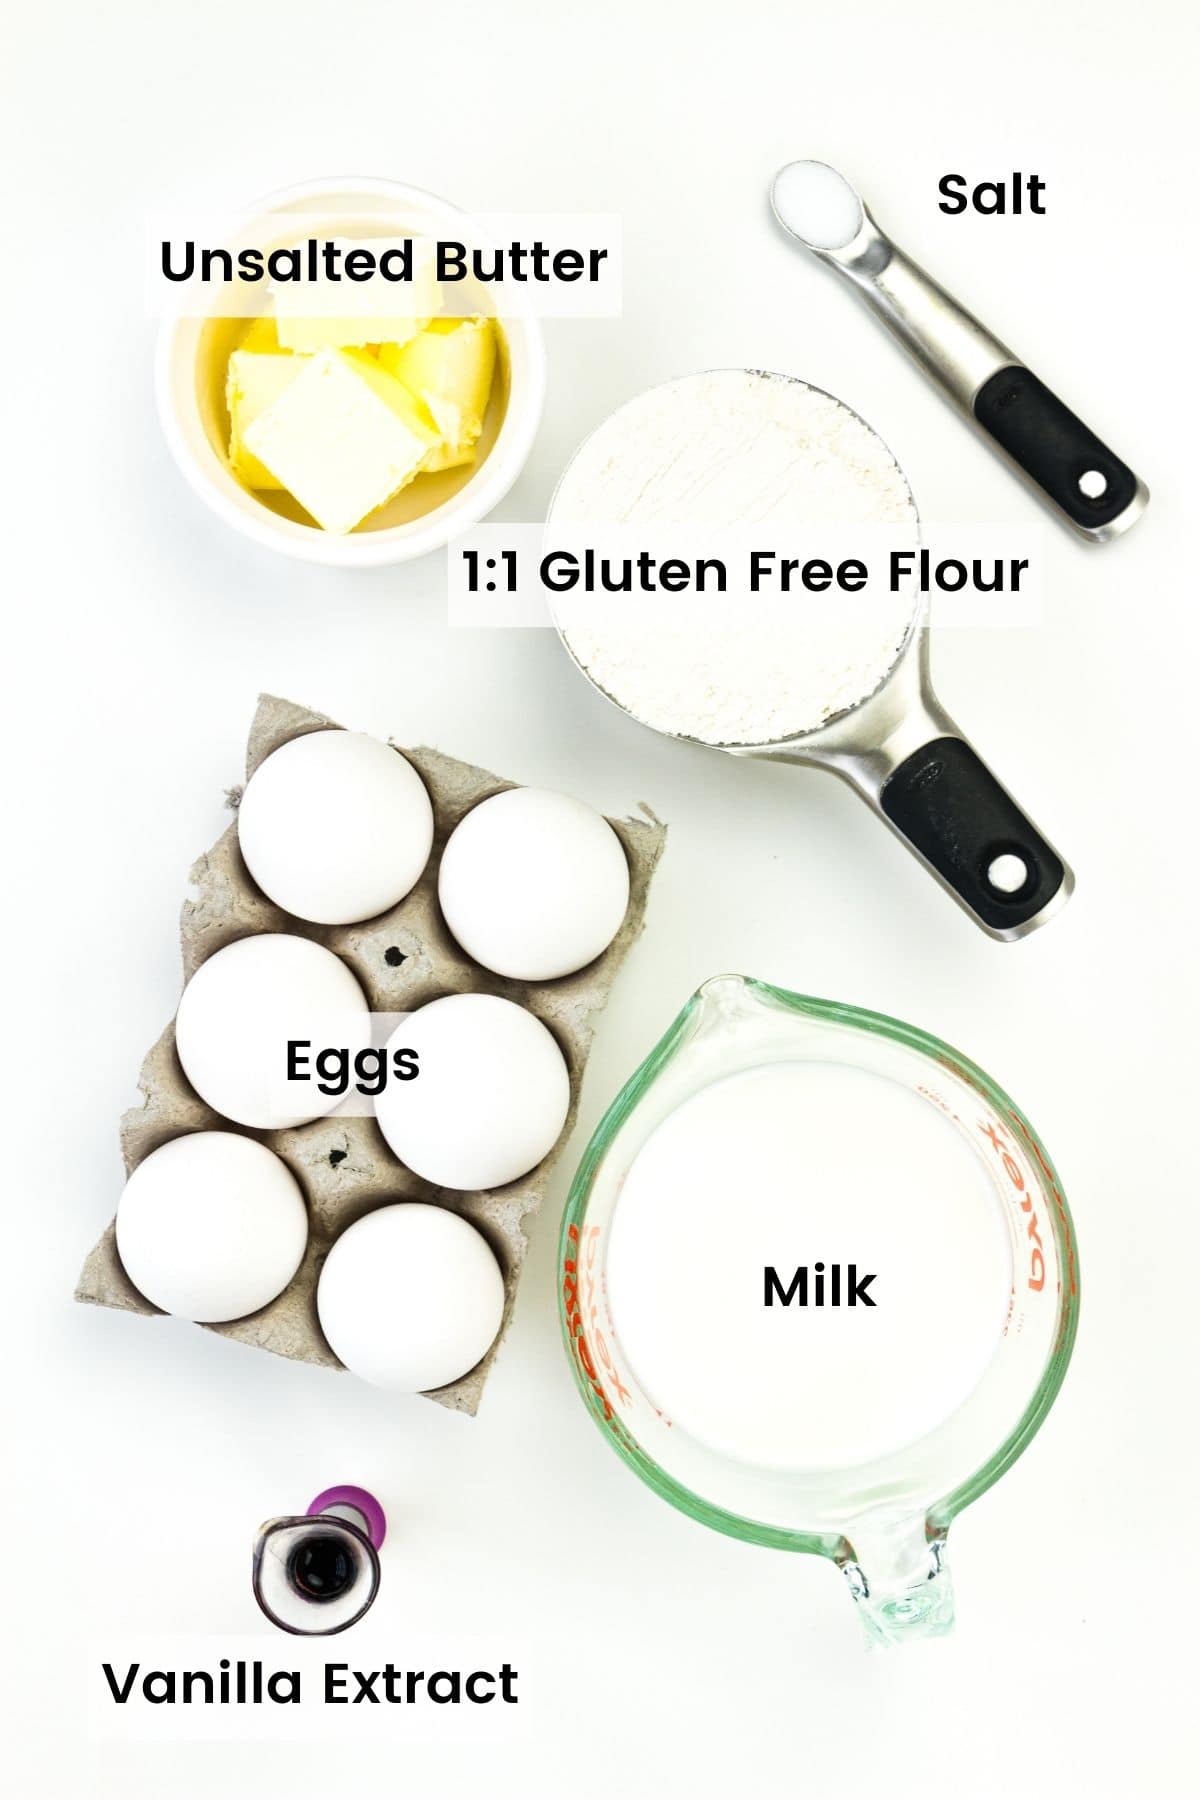 Ingredients for gluten free German pancakes are shown: gluten free flour, butter, eggs, milk, vanilla, salt.